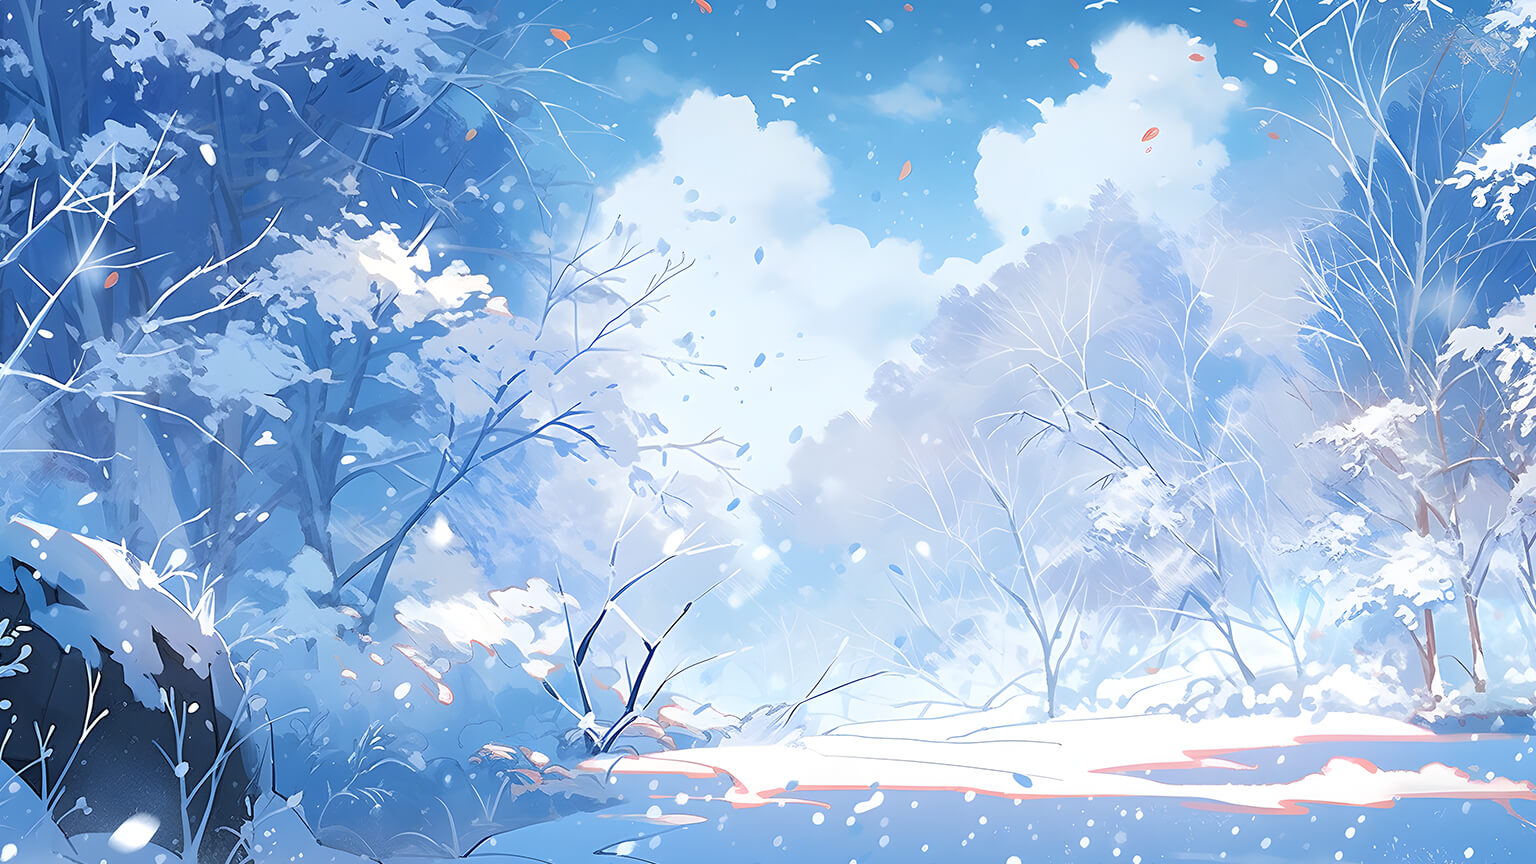 Aesthetic Winter Snowy Forest Desktop Wallpaper Download 4K